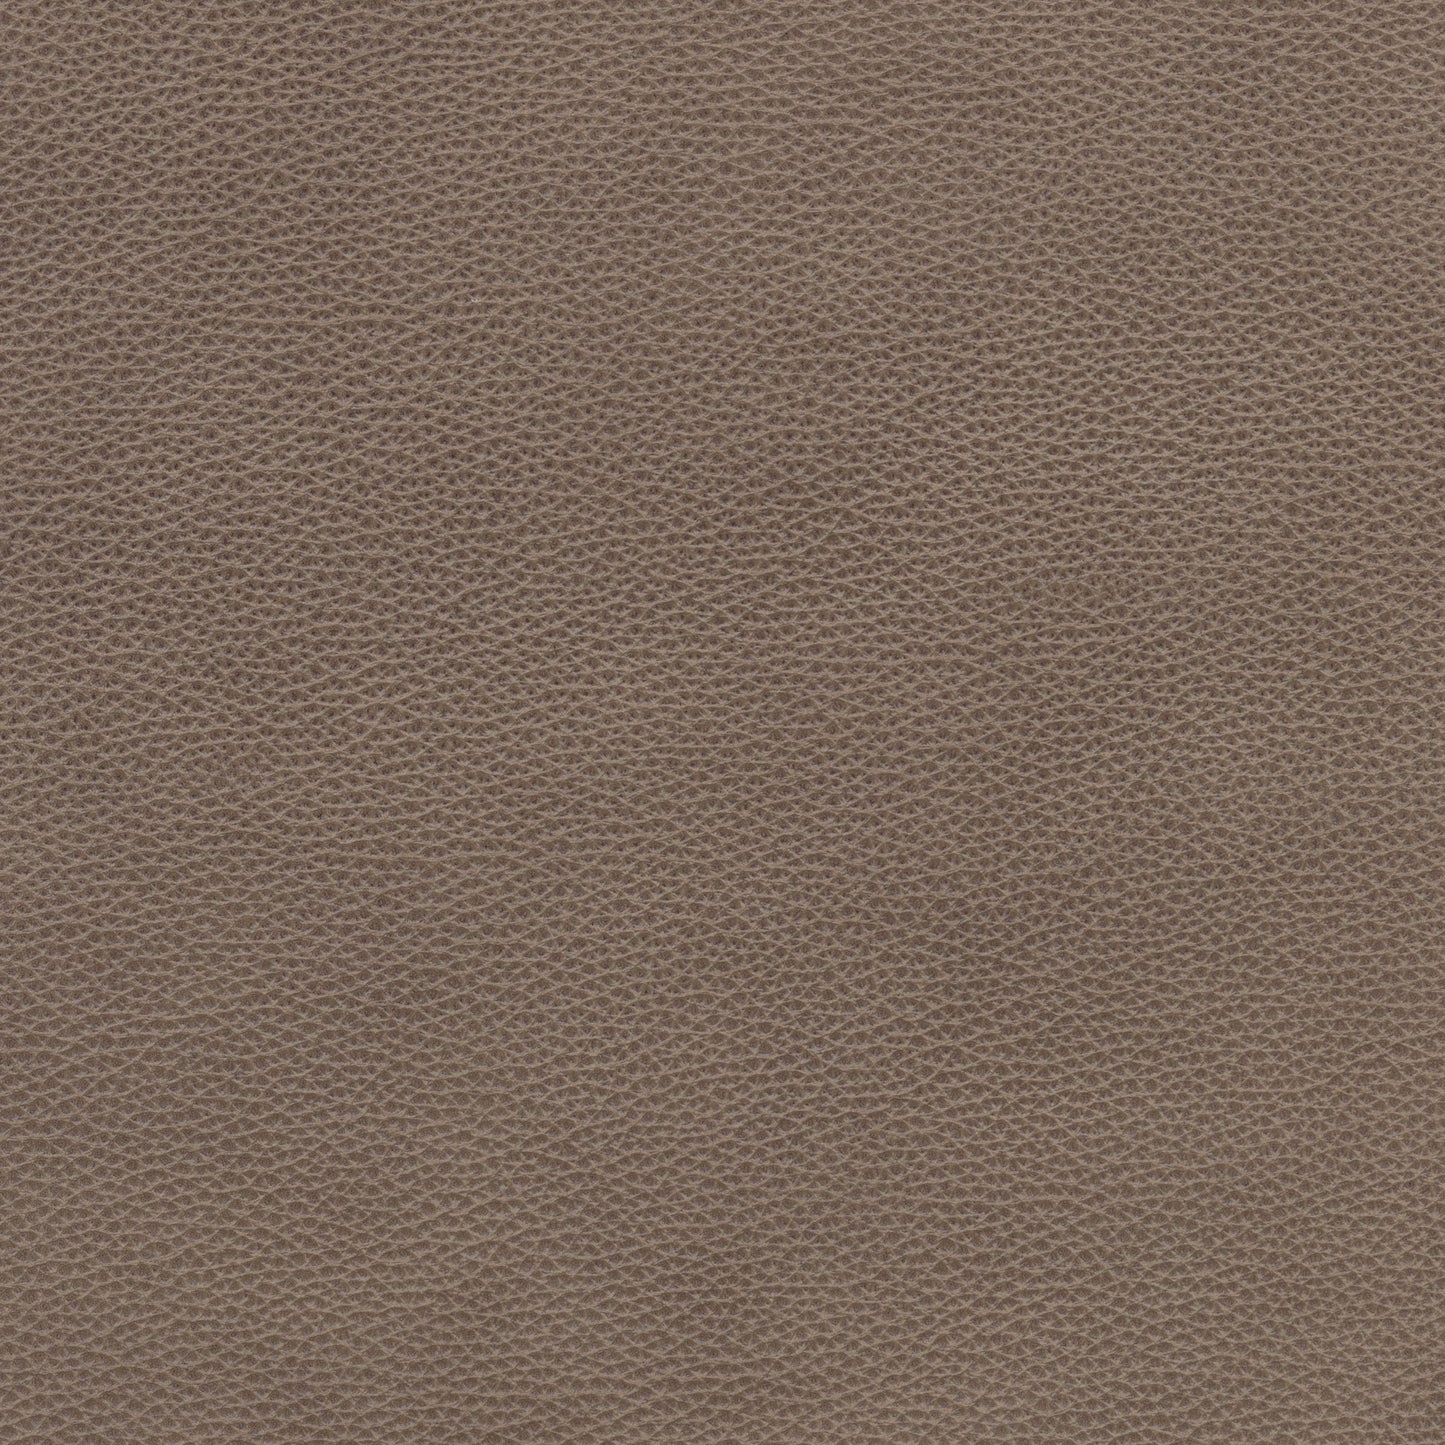 Selvano Granite Leather